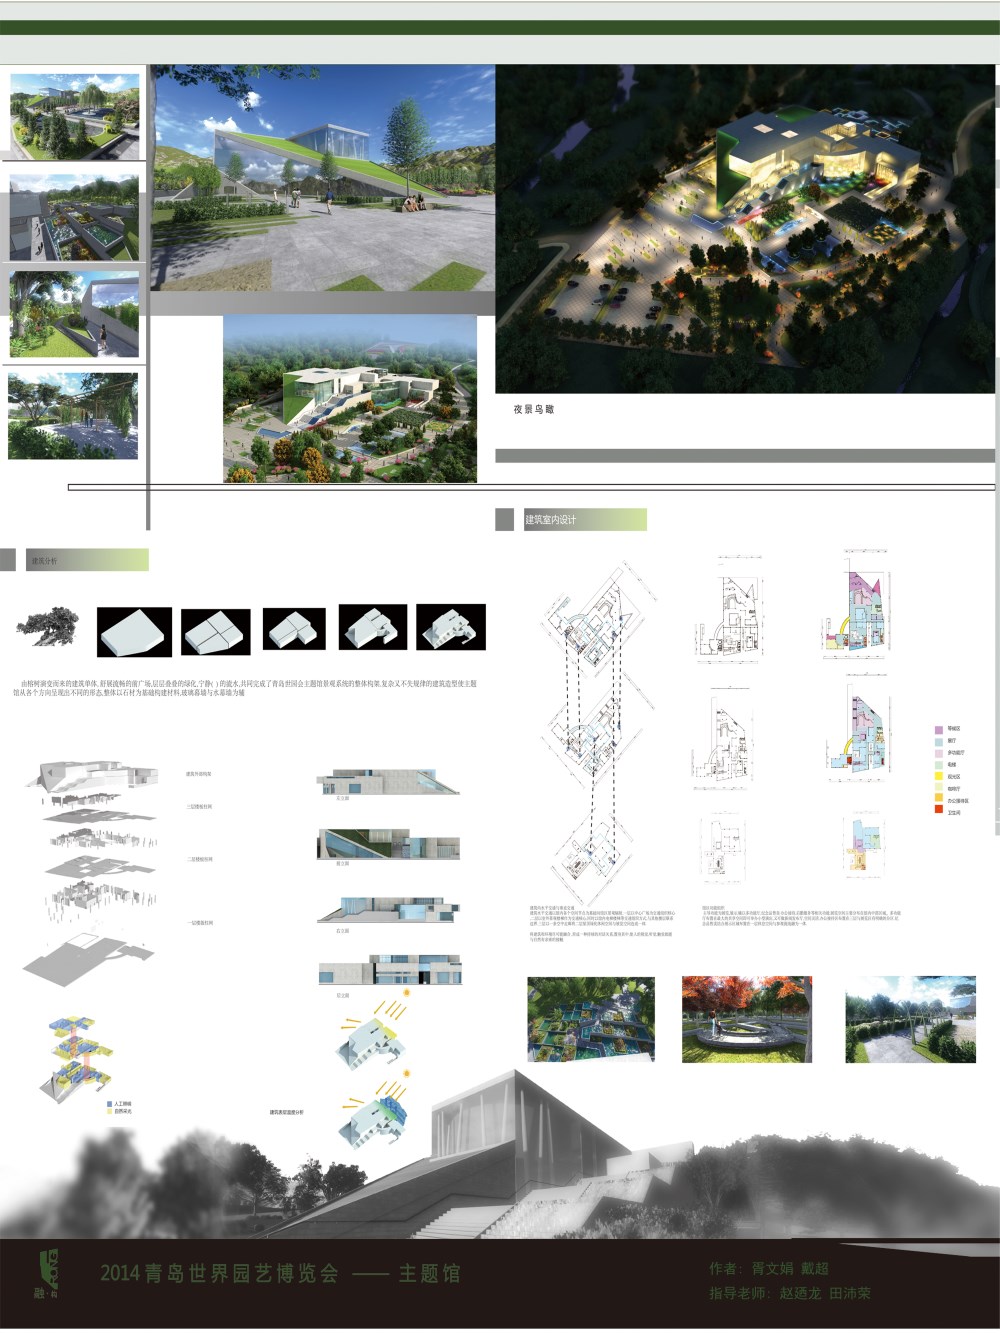 2014青岛世界园艺博览会主题体验馆景观设计-2